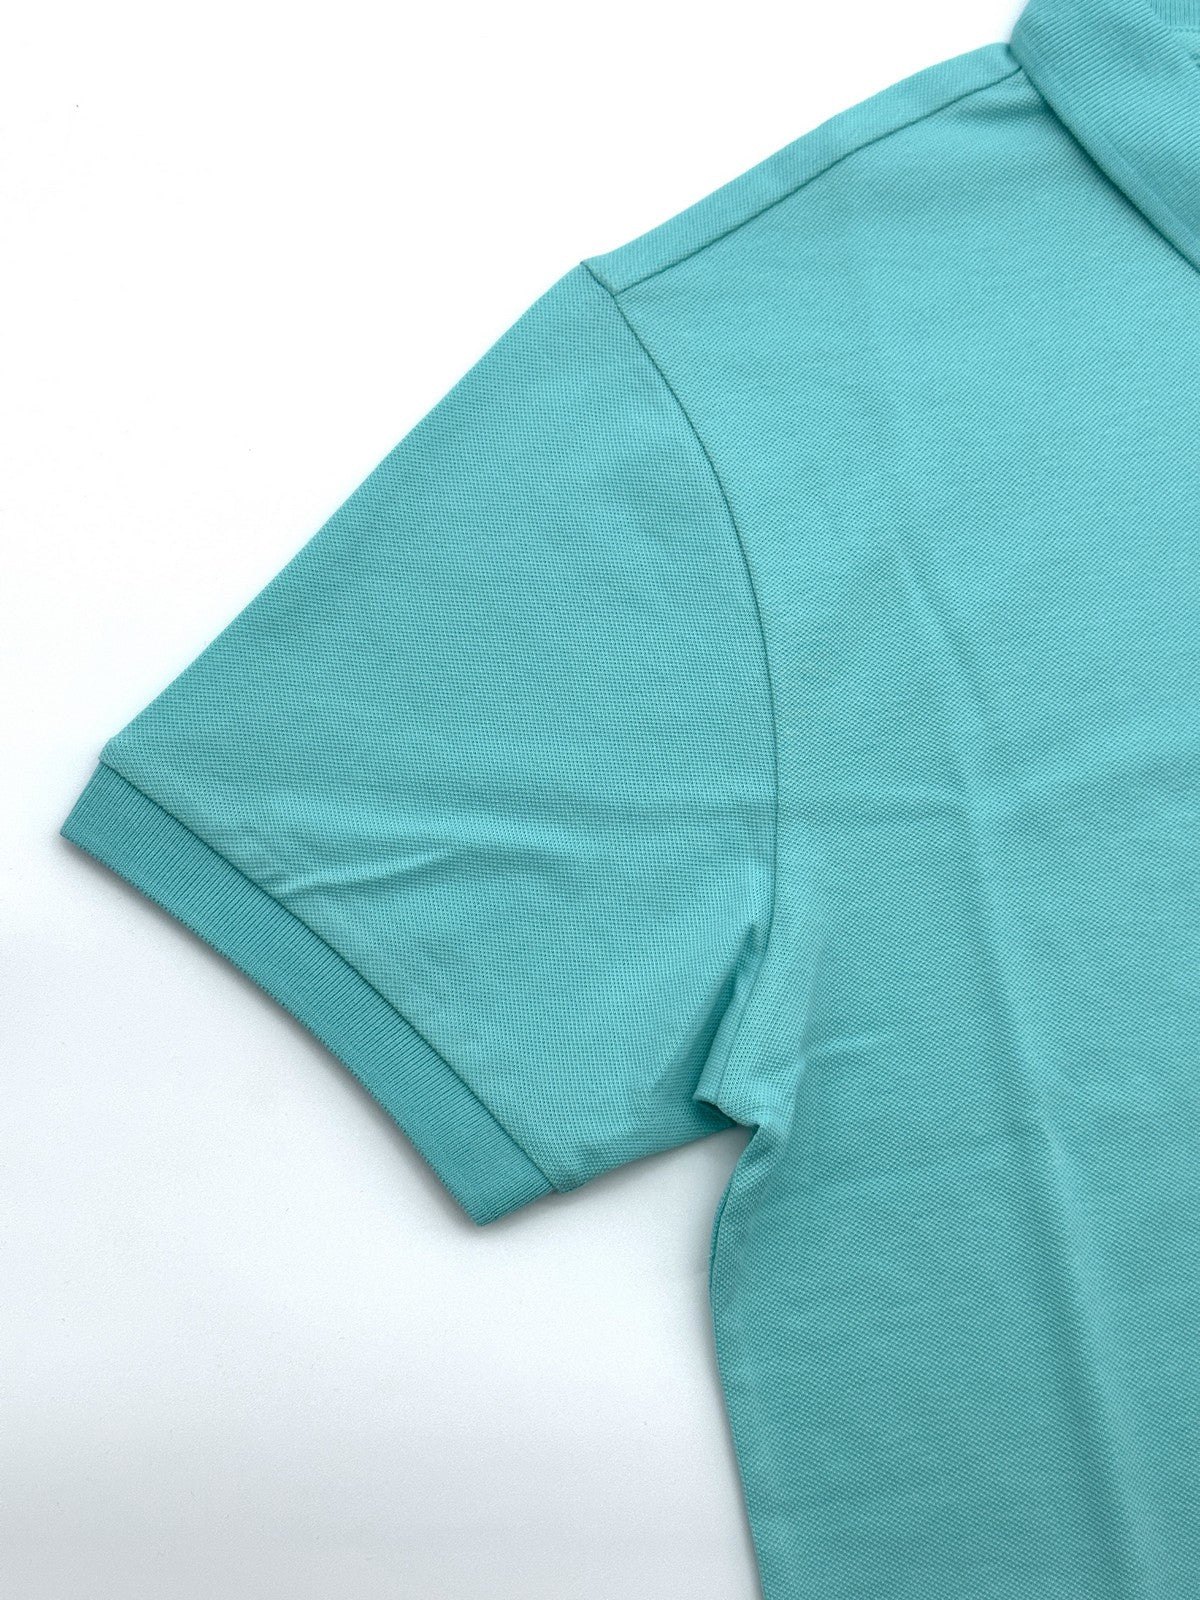 COLMAR T-Shirt et polo pour hommes 7646 4SH 670 Bleu